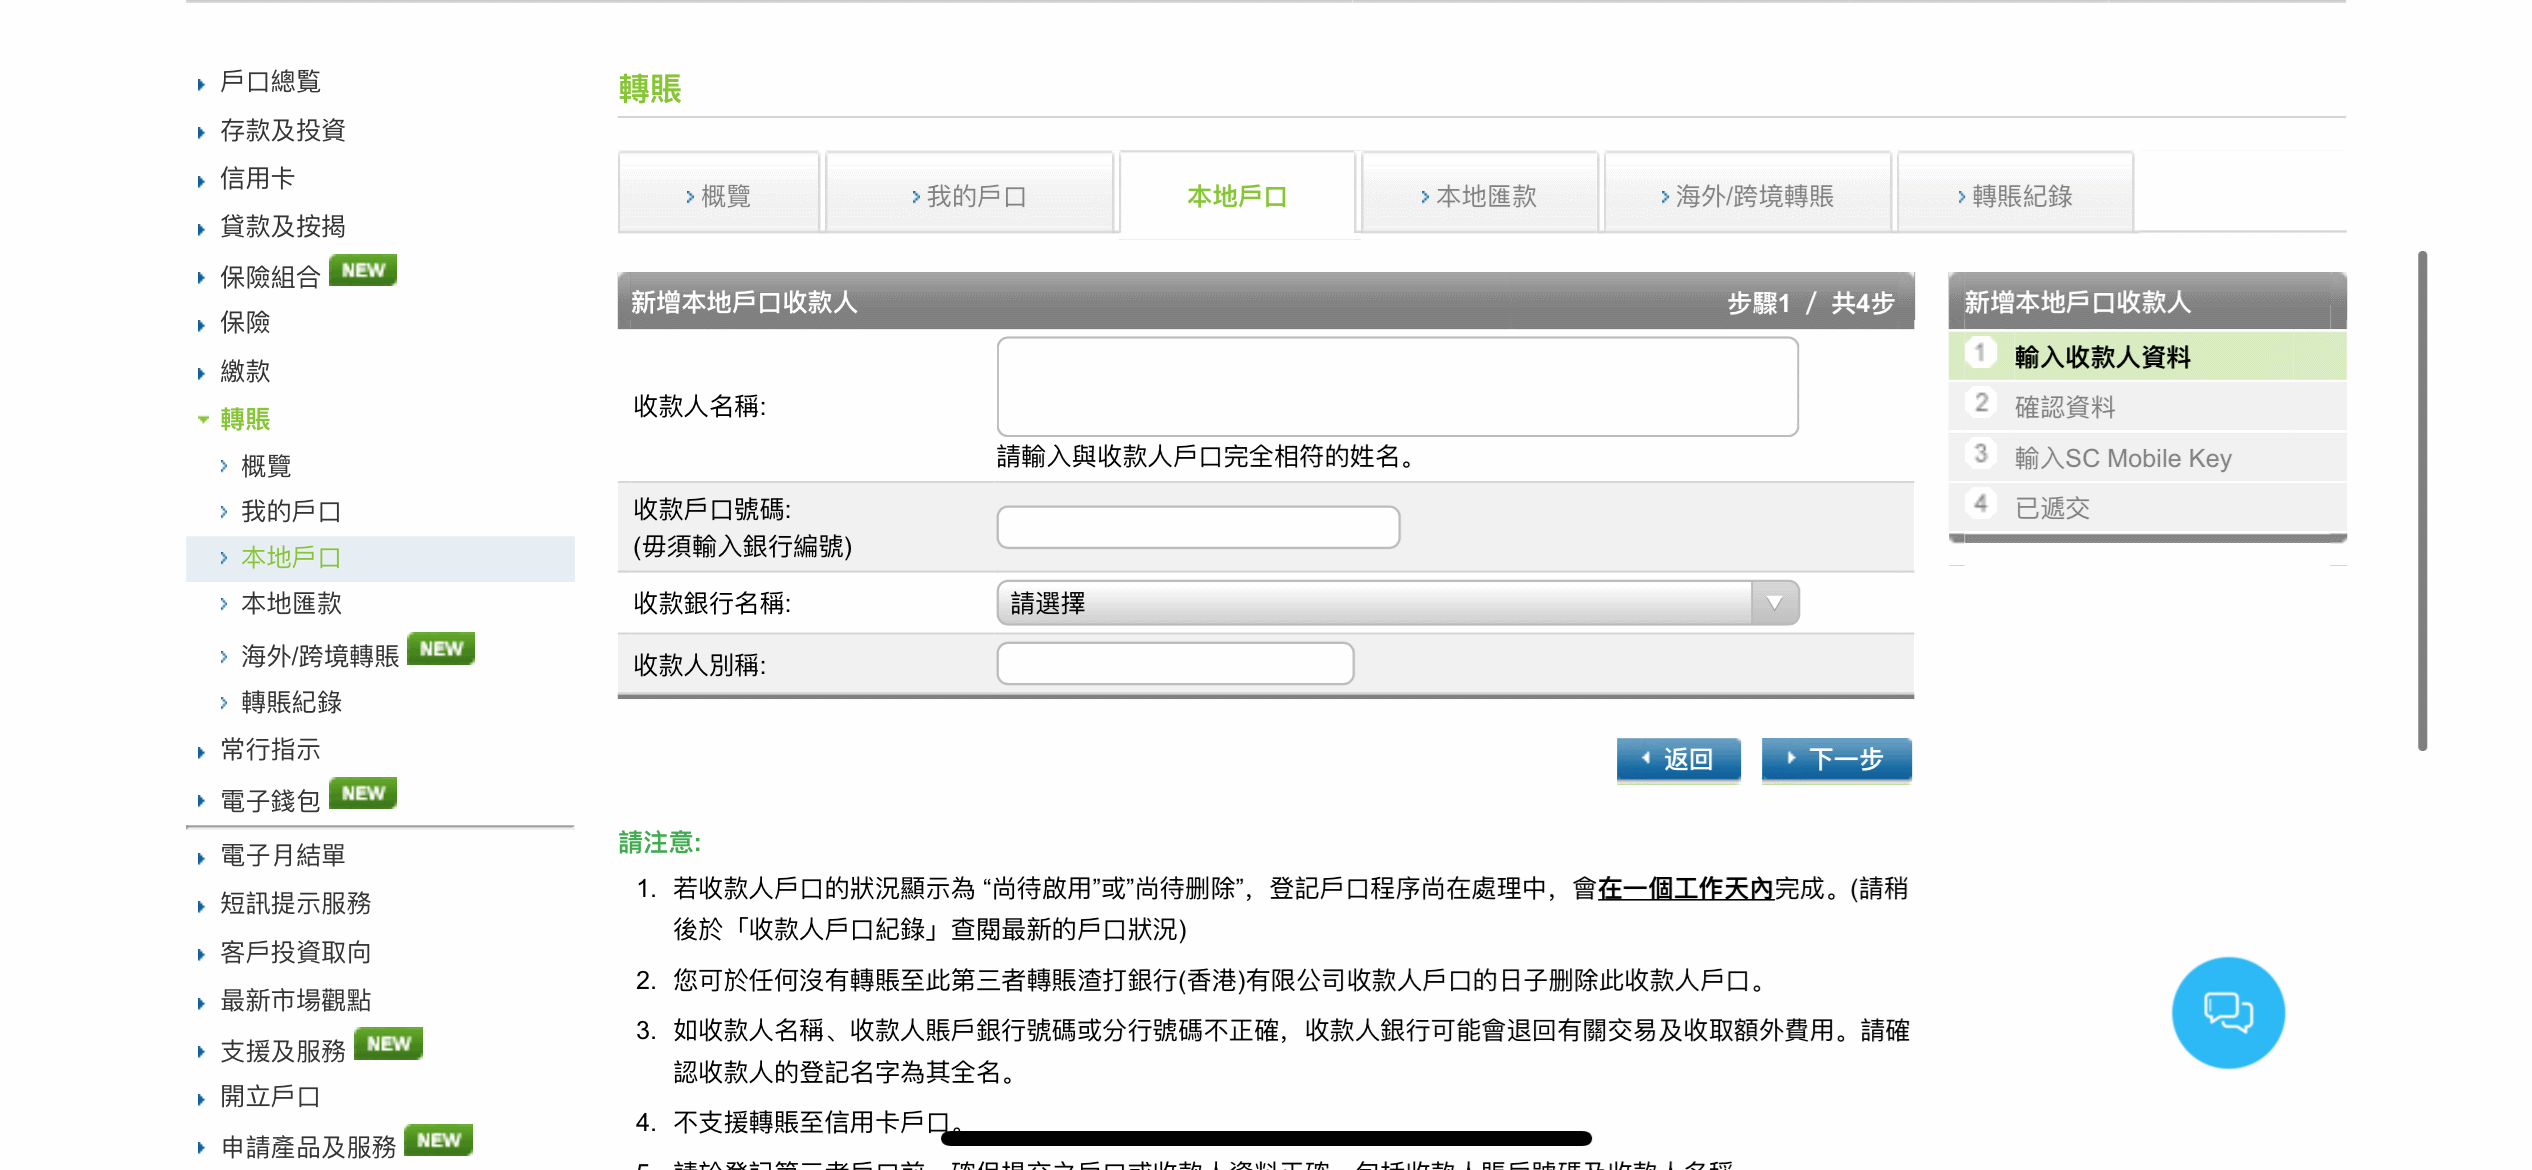 登入網上理財並以10位數字WeChat Pay HK賬戶號碼新增本地戶口收款人